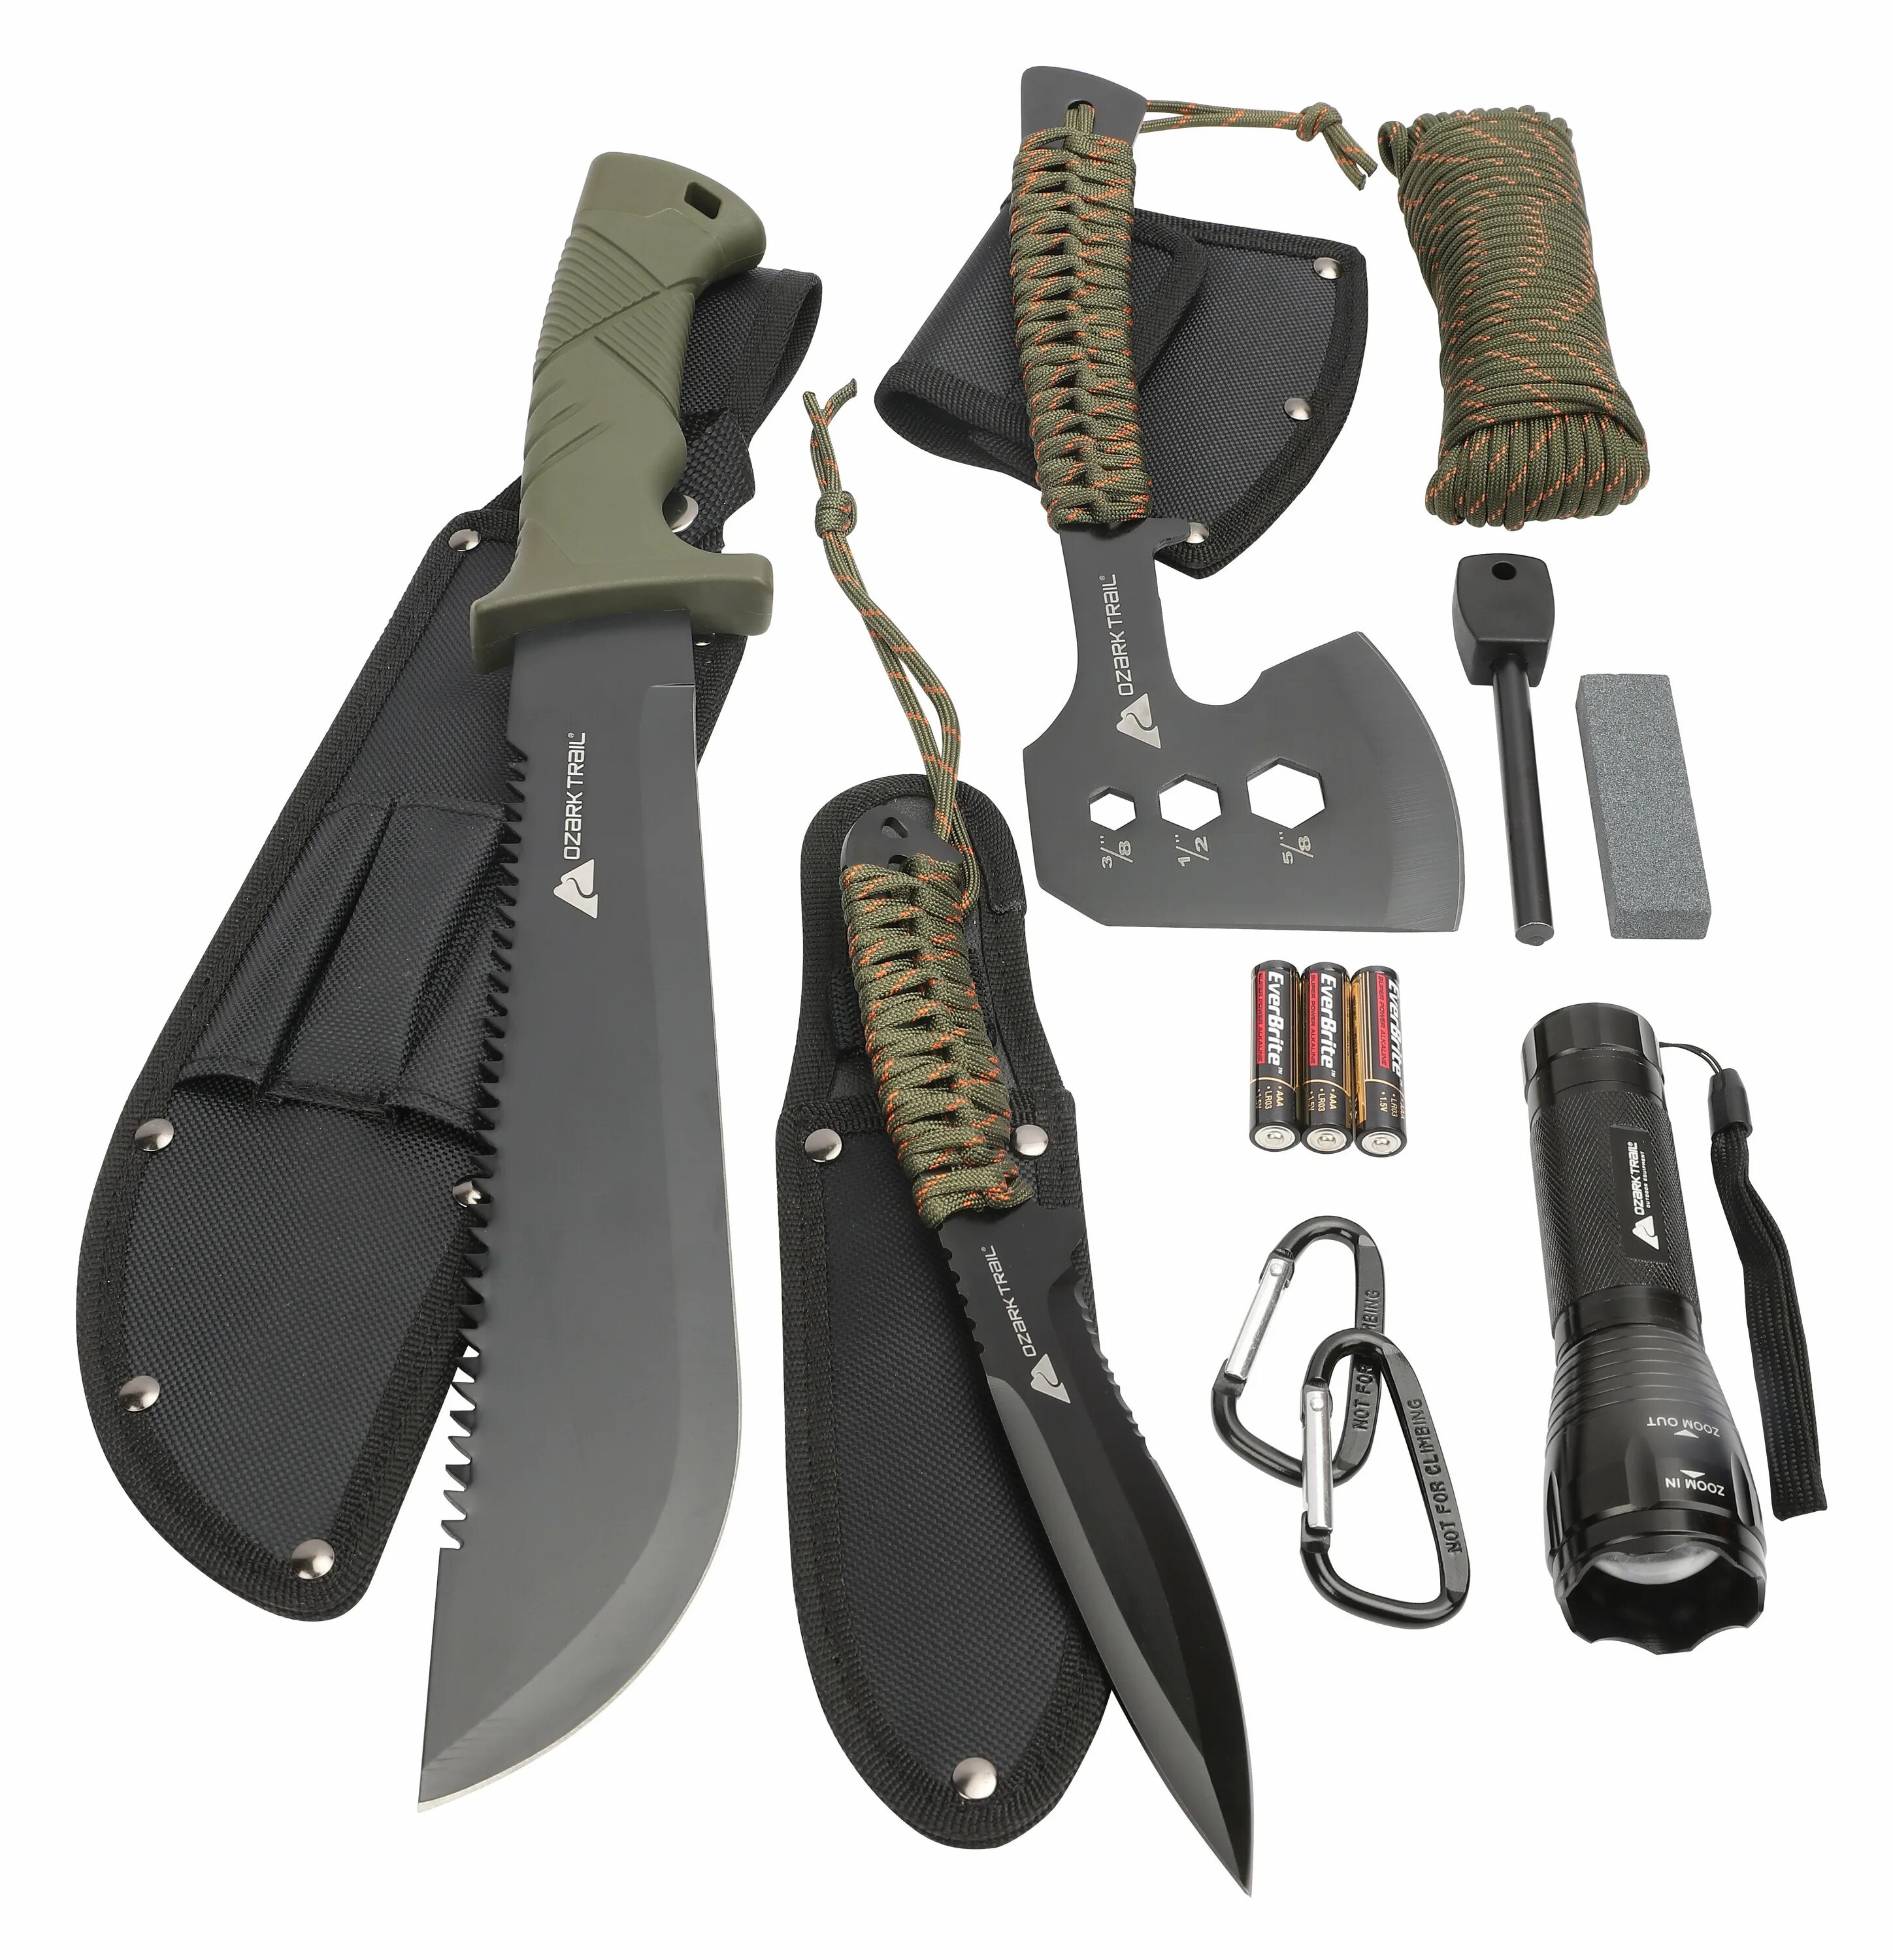 Survival tool. Нож выживания Survival Knife. Ozark Trail нож. Нож выживальщика Survival Kit Knife. Тактический мультитул - нож Justar Tools.